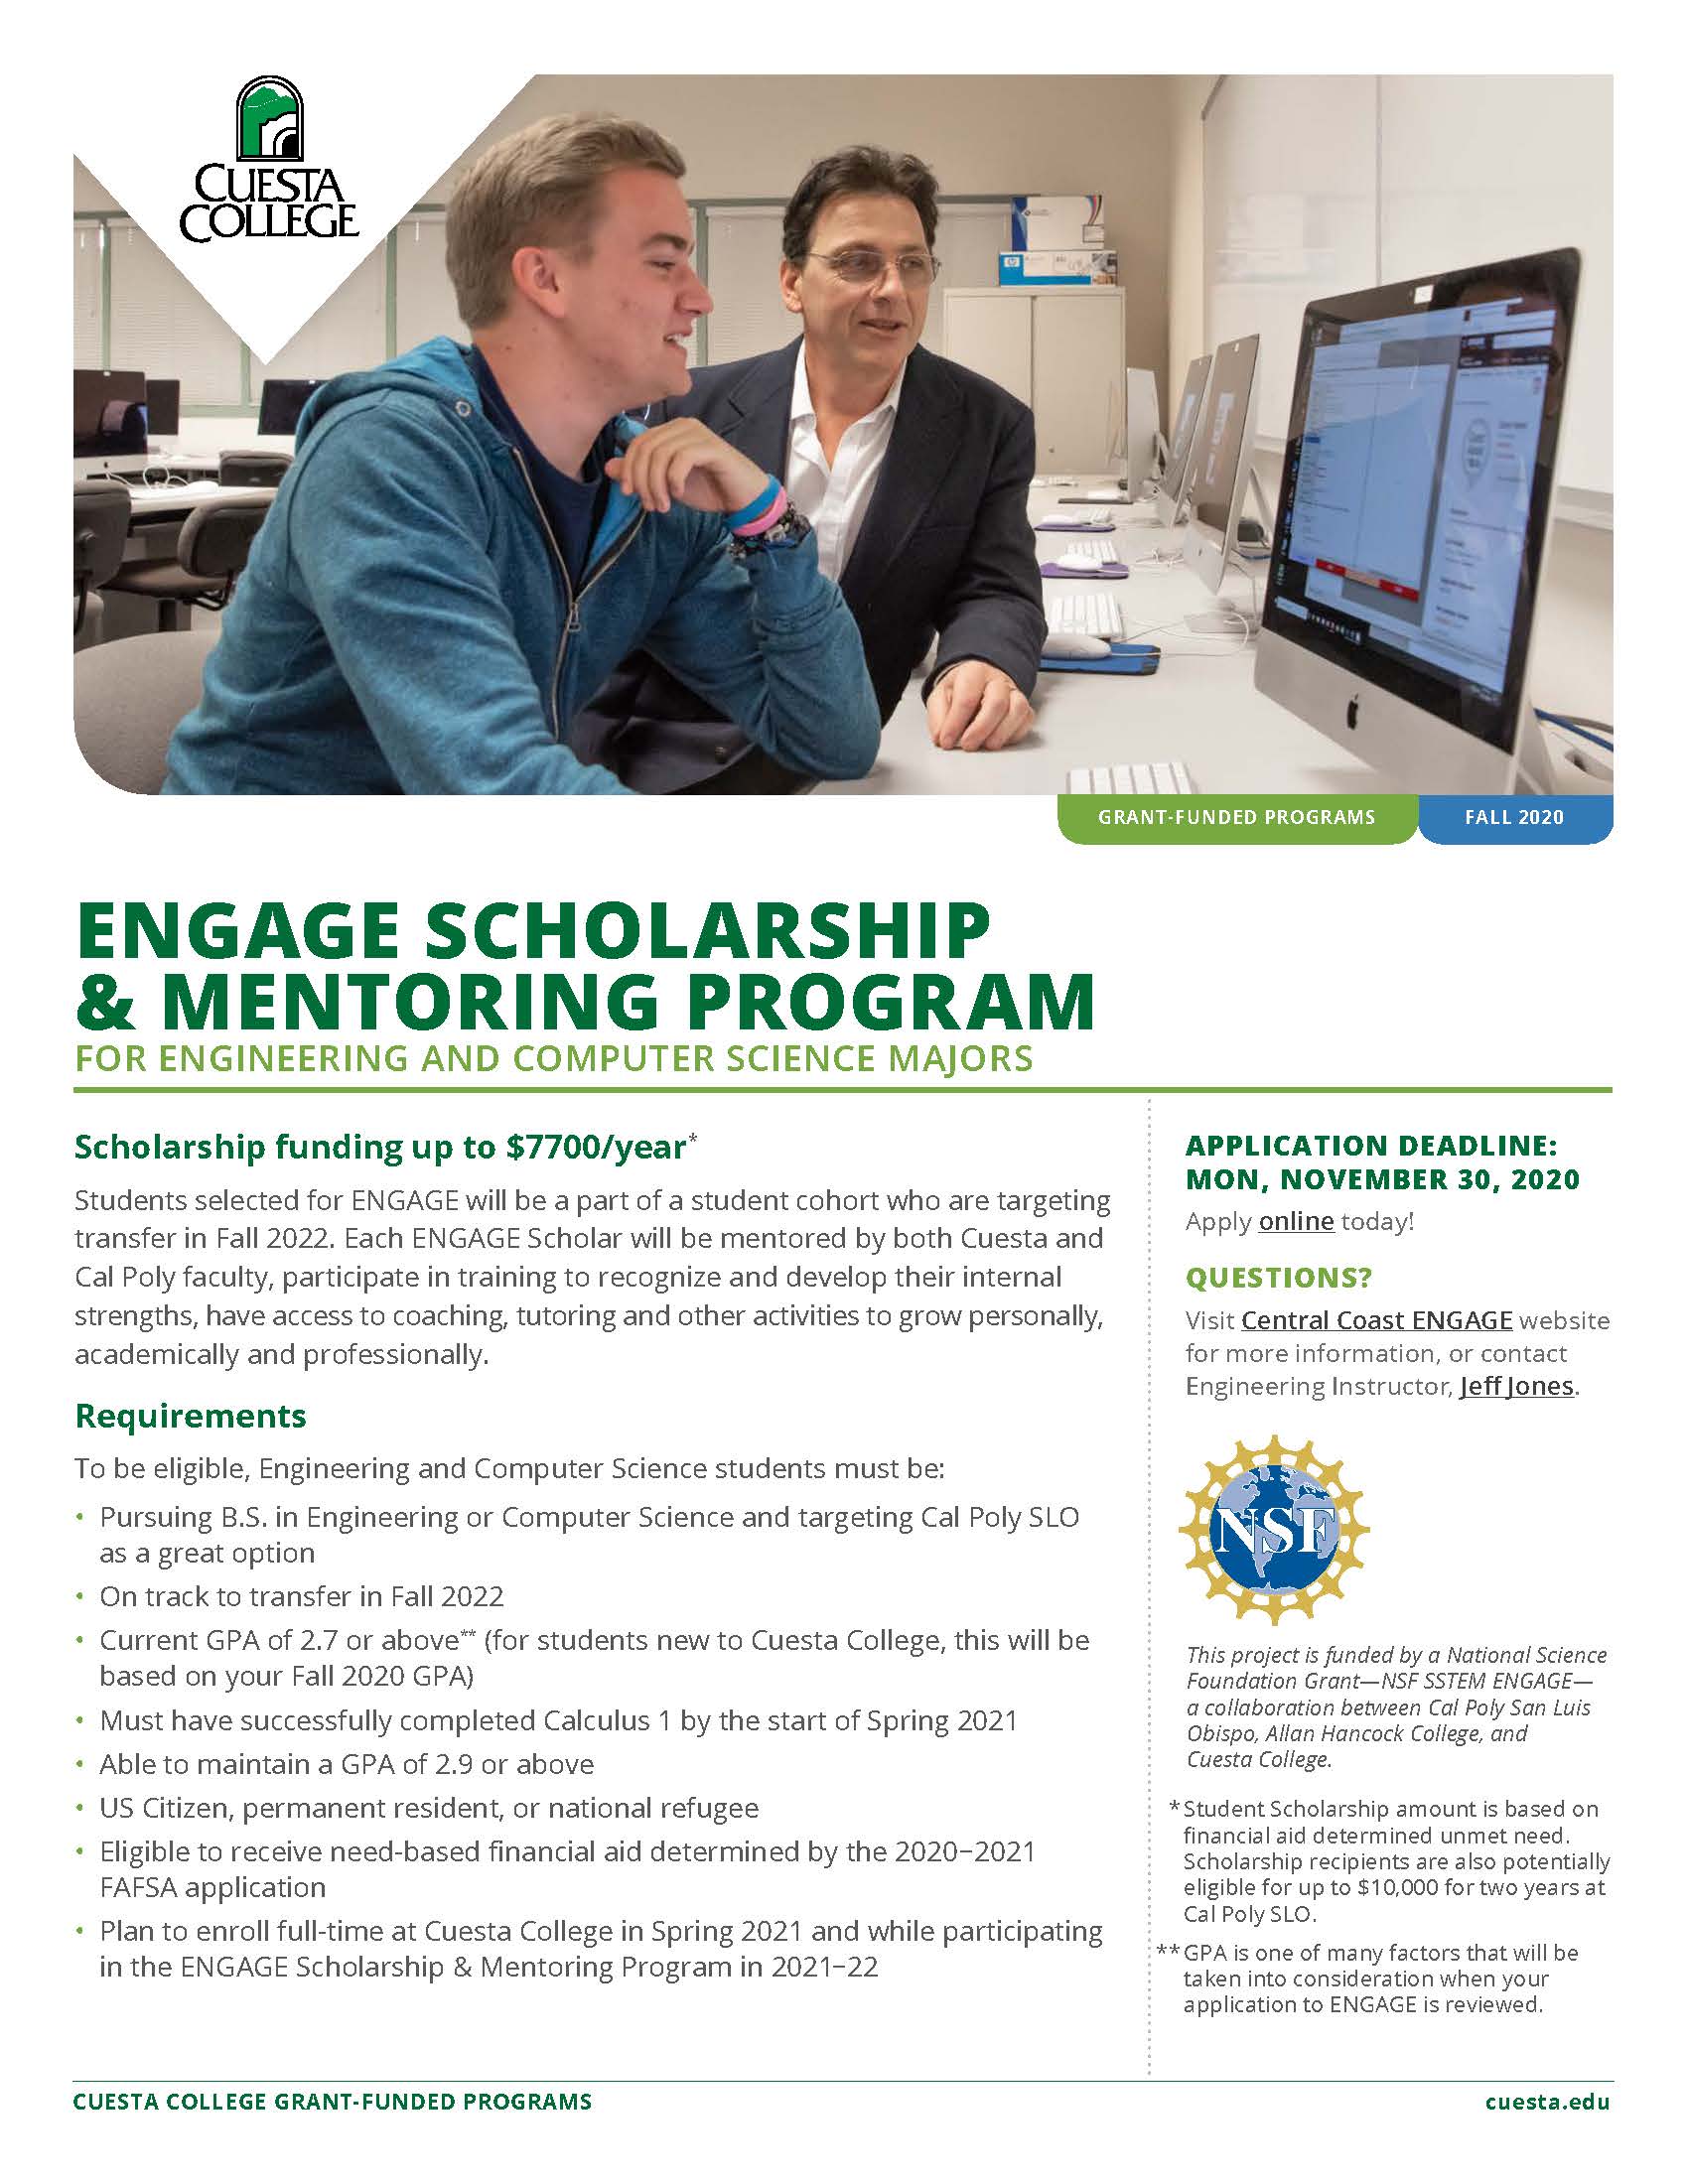 ENGAGE Scholarship & Mentoring Info Sheet